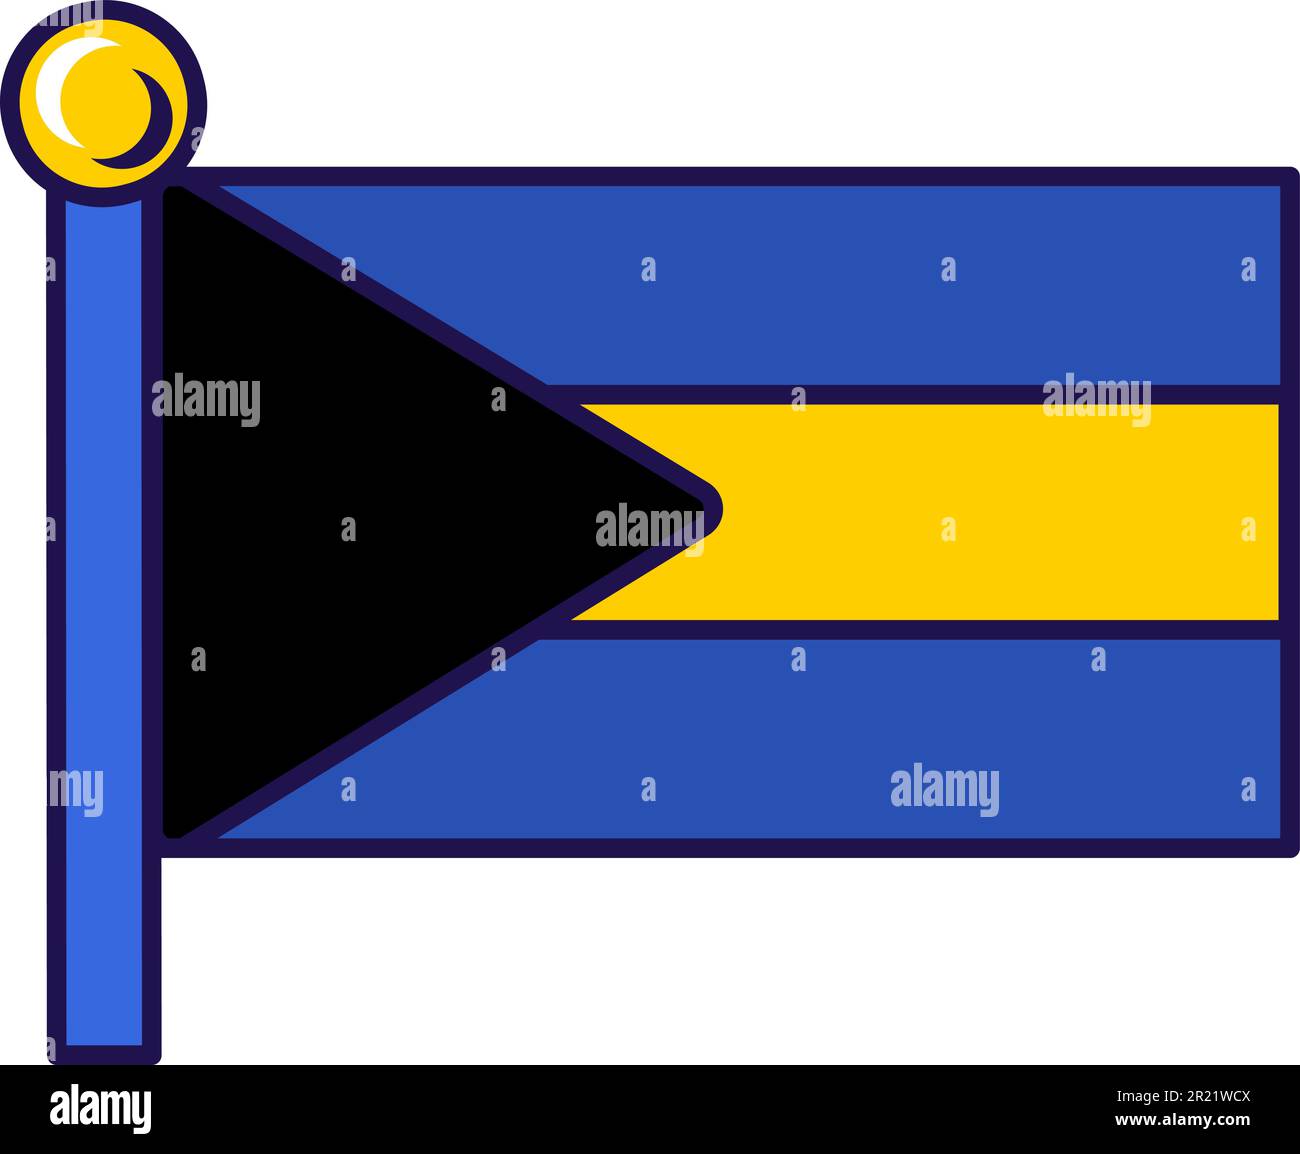 Drapeau du Commonwealth des bahamas sur le vecteur flagstaff. Triangle noir et bandes bleu-vert et or sur le symbole national, officiel et patriotique de la liberté Illustration de Vecteur